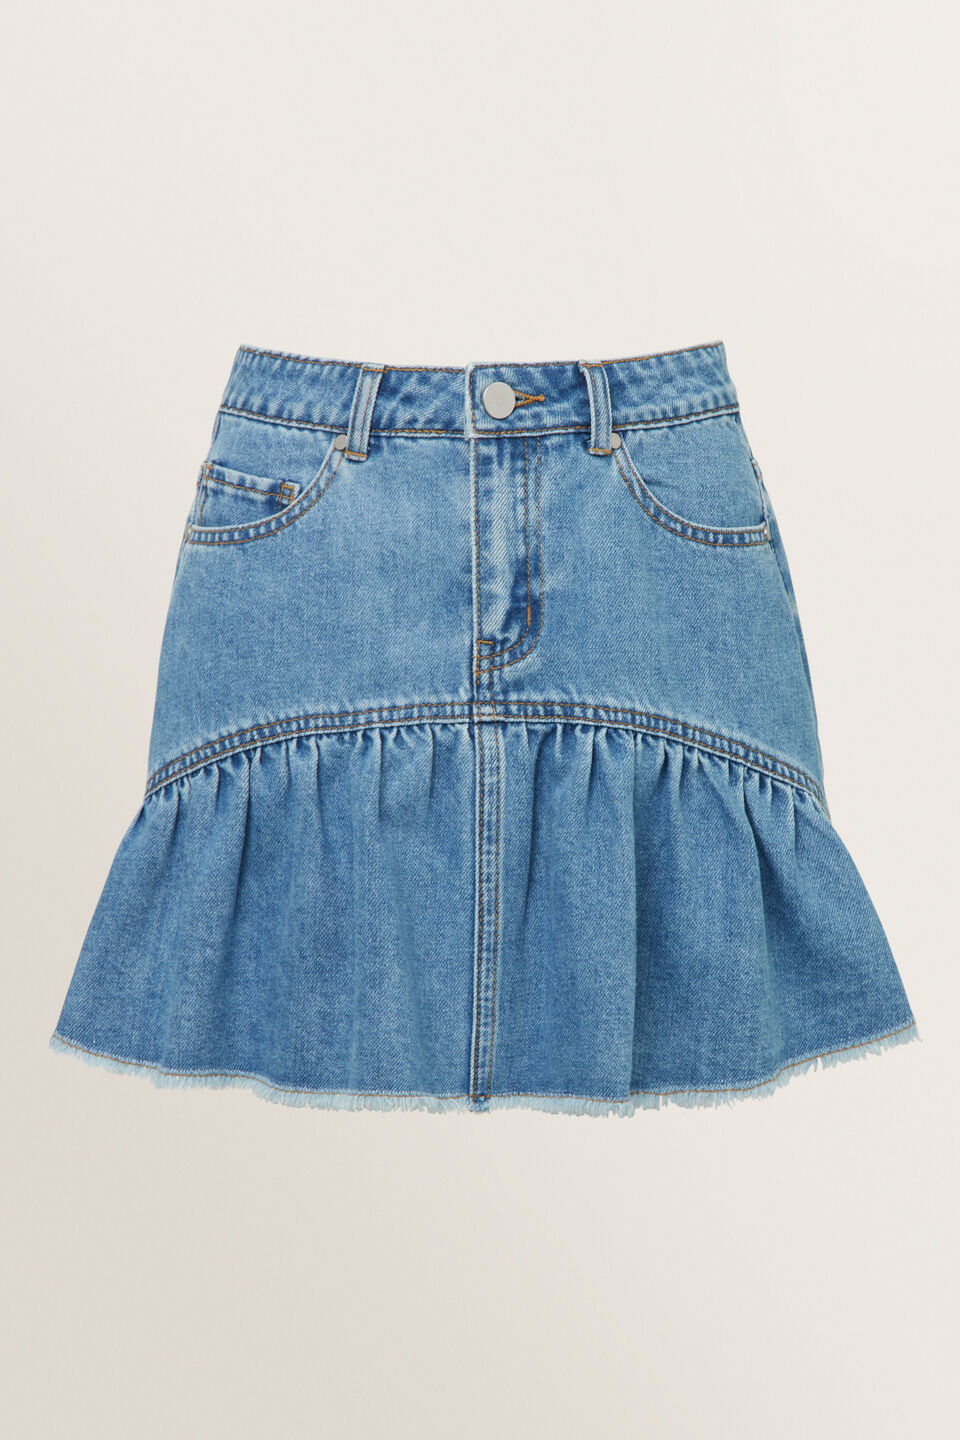 Peplum Denim Skirt  Retro Blue Wash